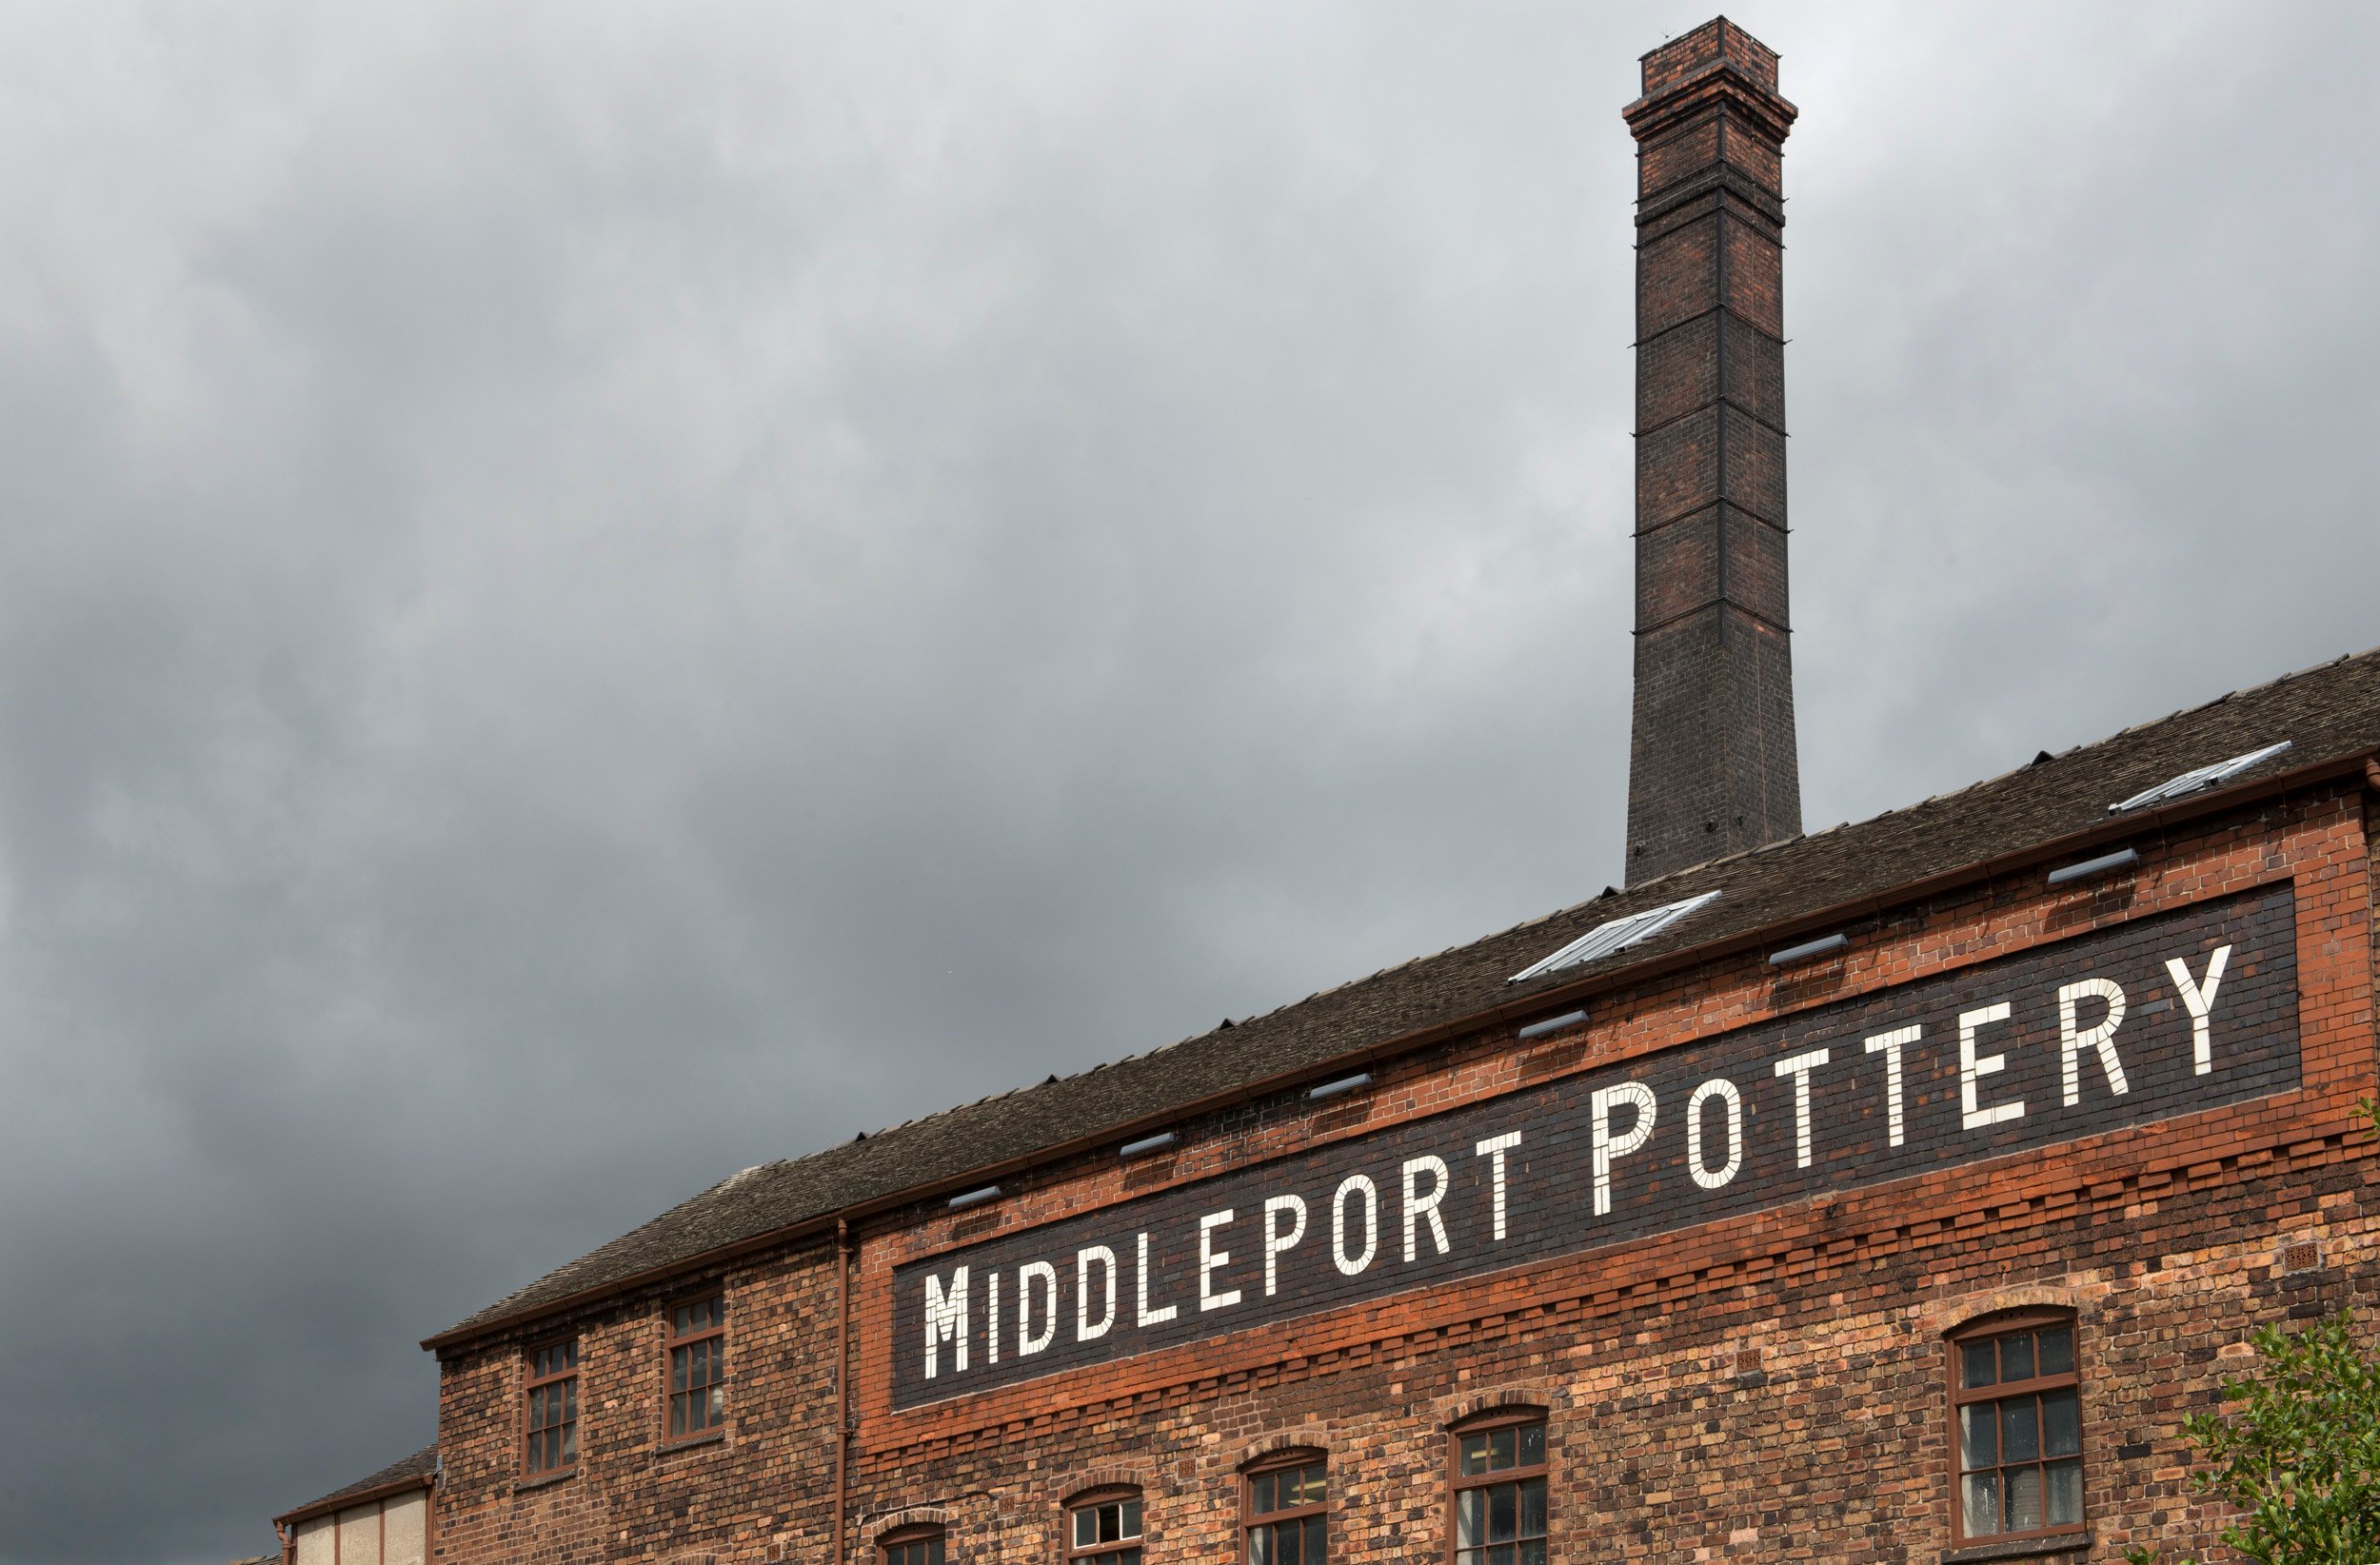 Middelport pottery, Stoke on Trent